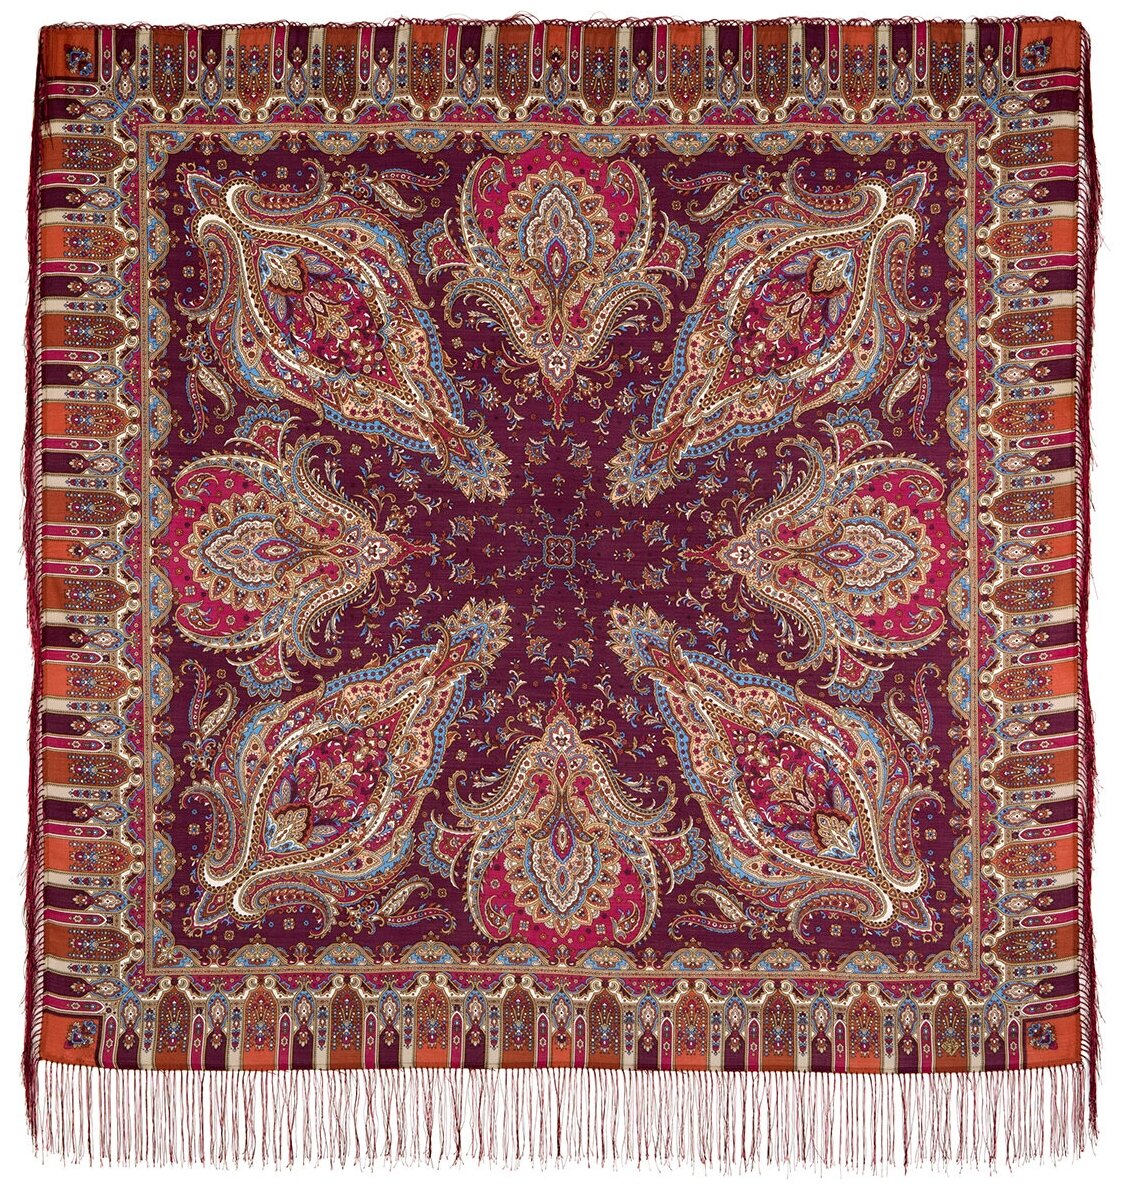 Павловопосадские платки/шерстяной платок с шелковой бахромой, 1683 мечта хрустальная, вид 57, бордовый